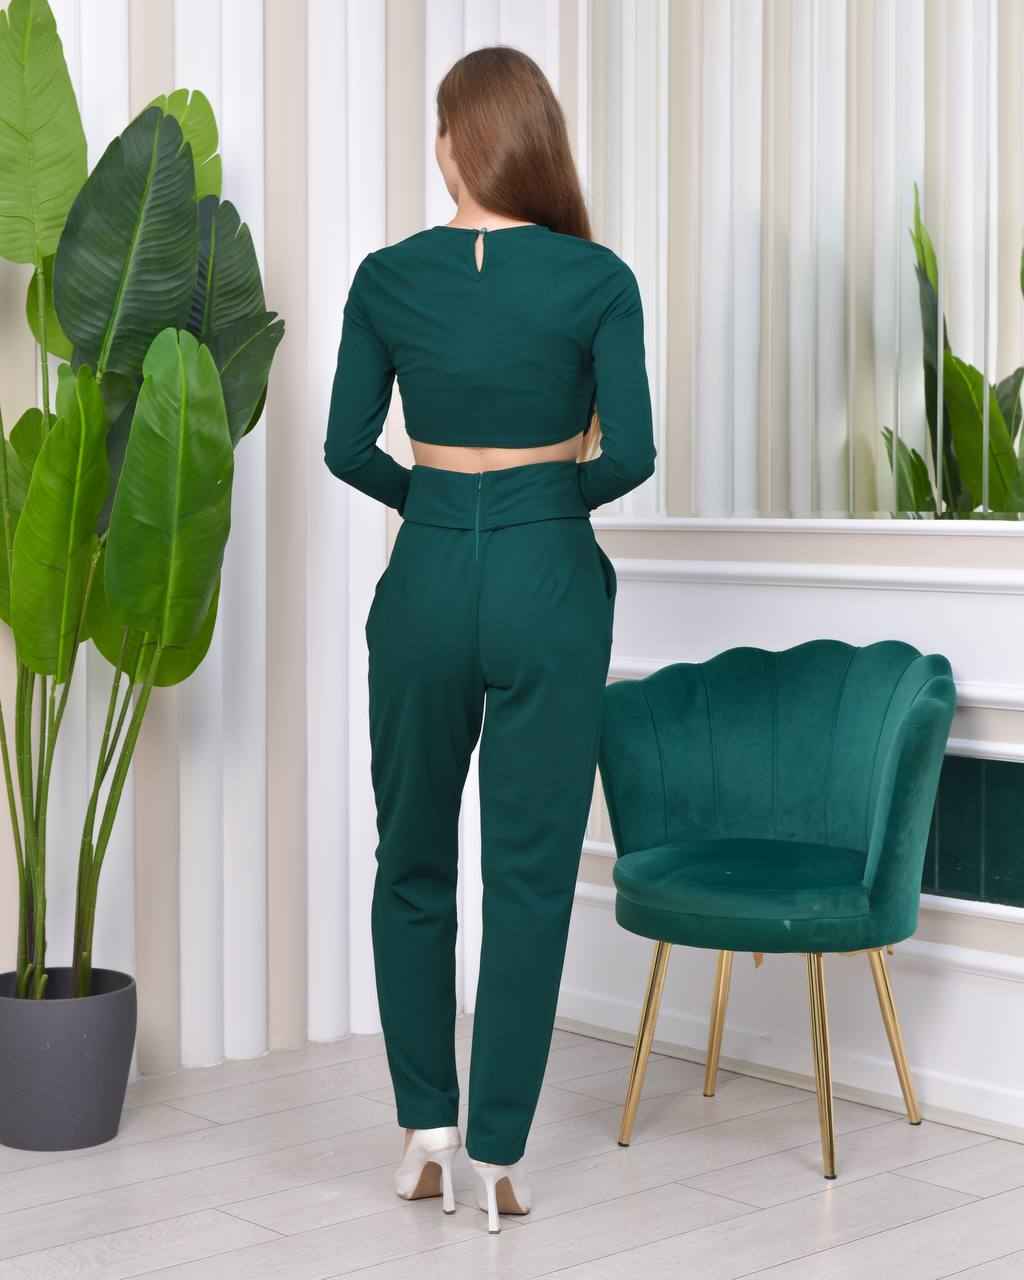 2157 - Scuba Krep Tasarım Bluz Pantolon Alt Üst Takım Elbise